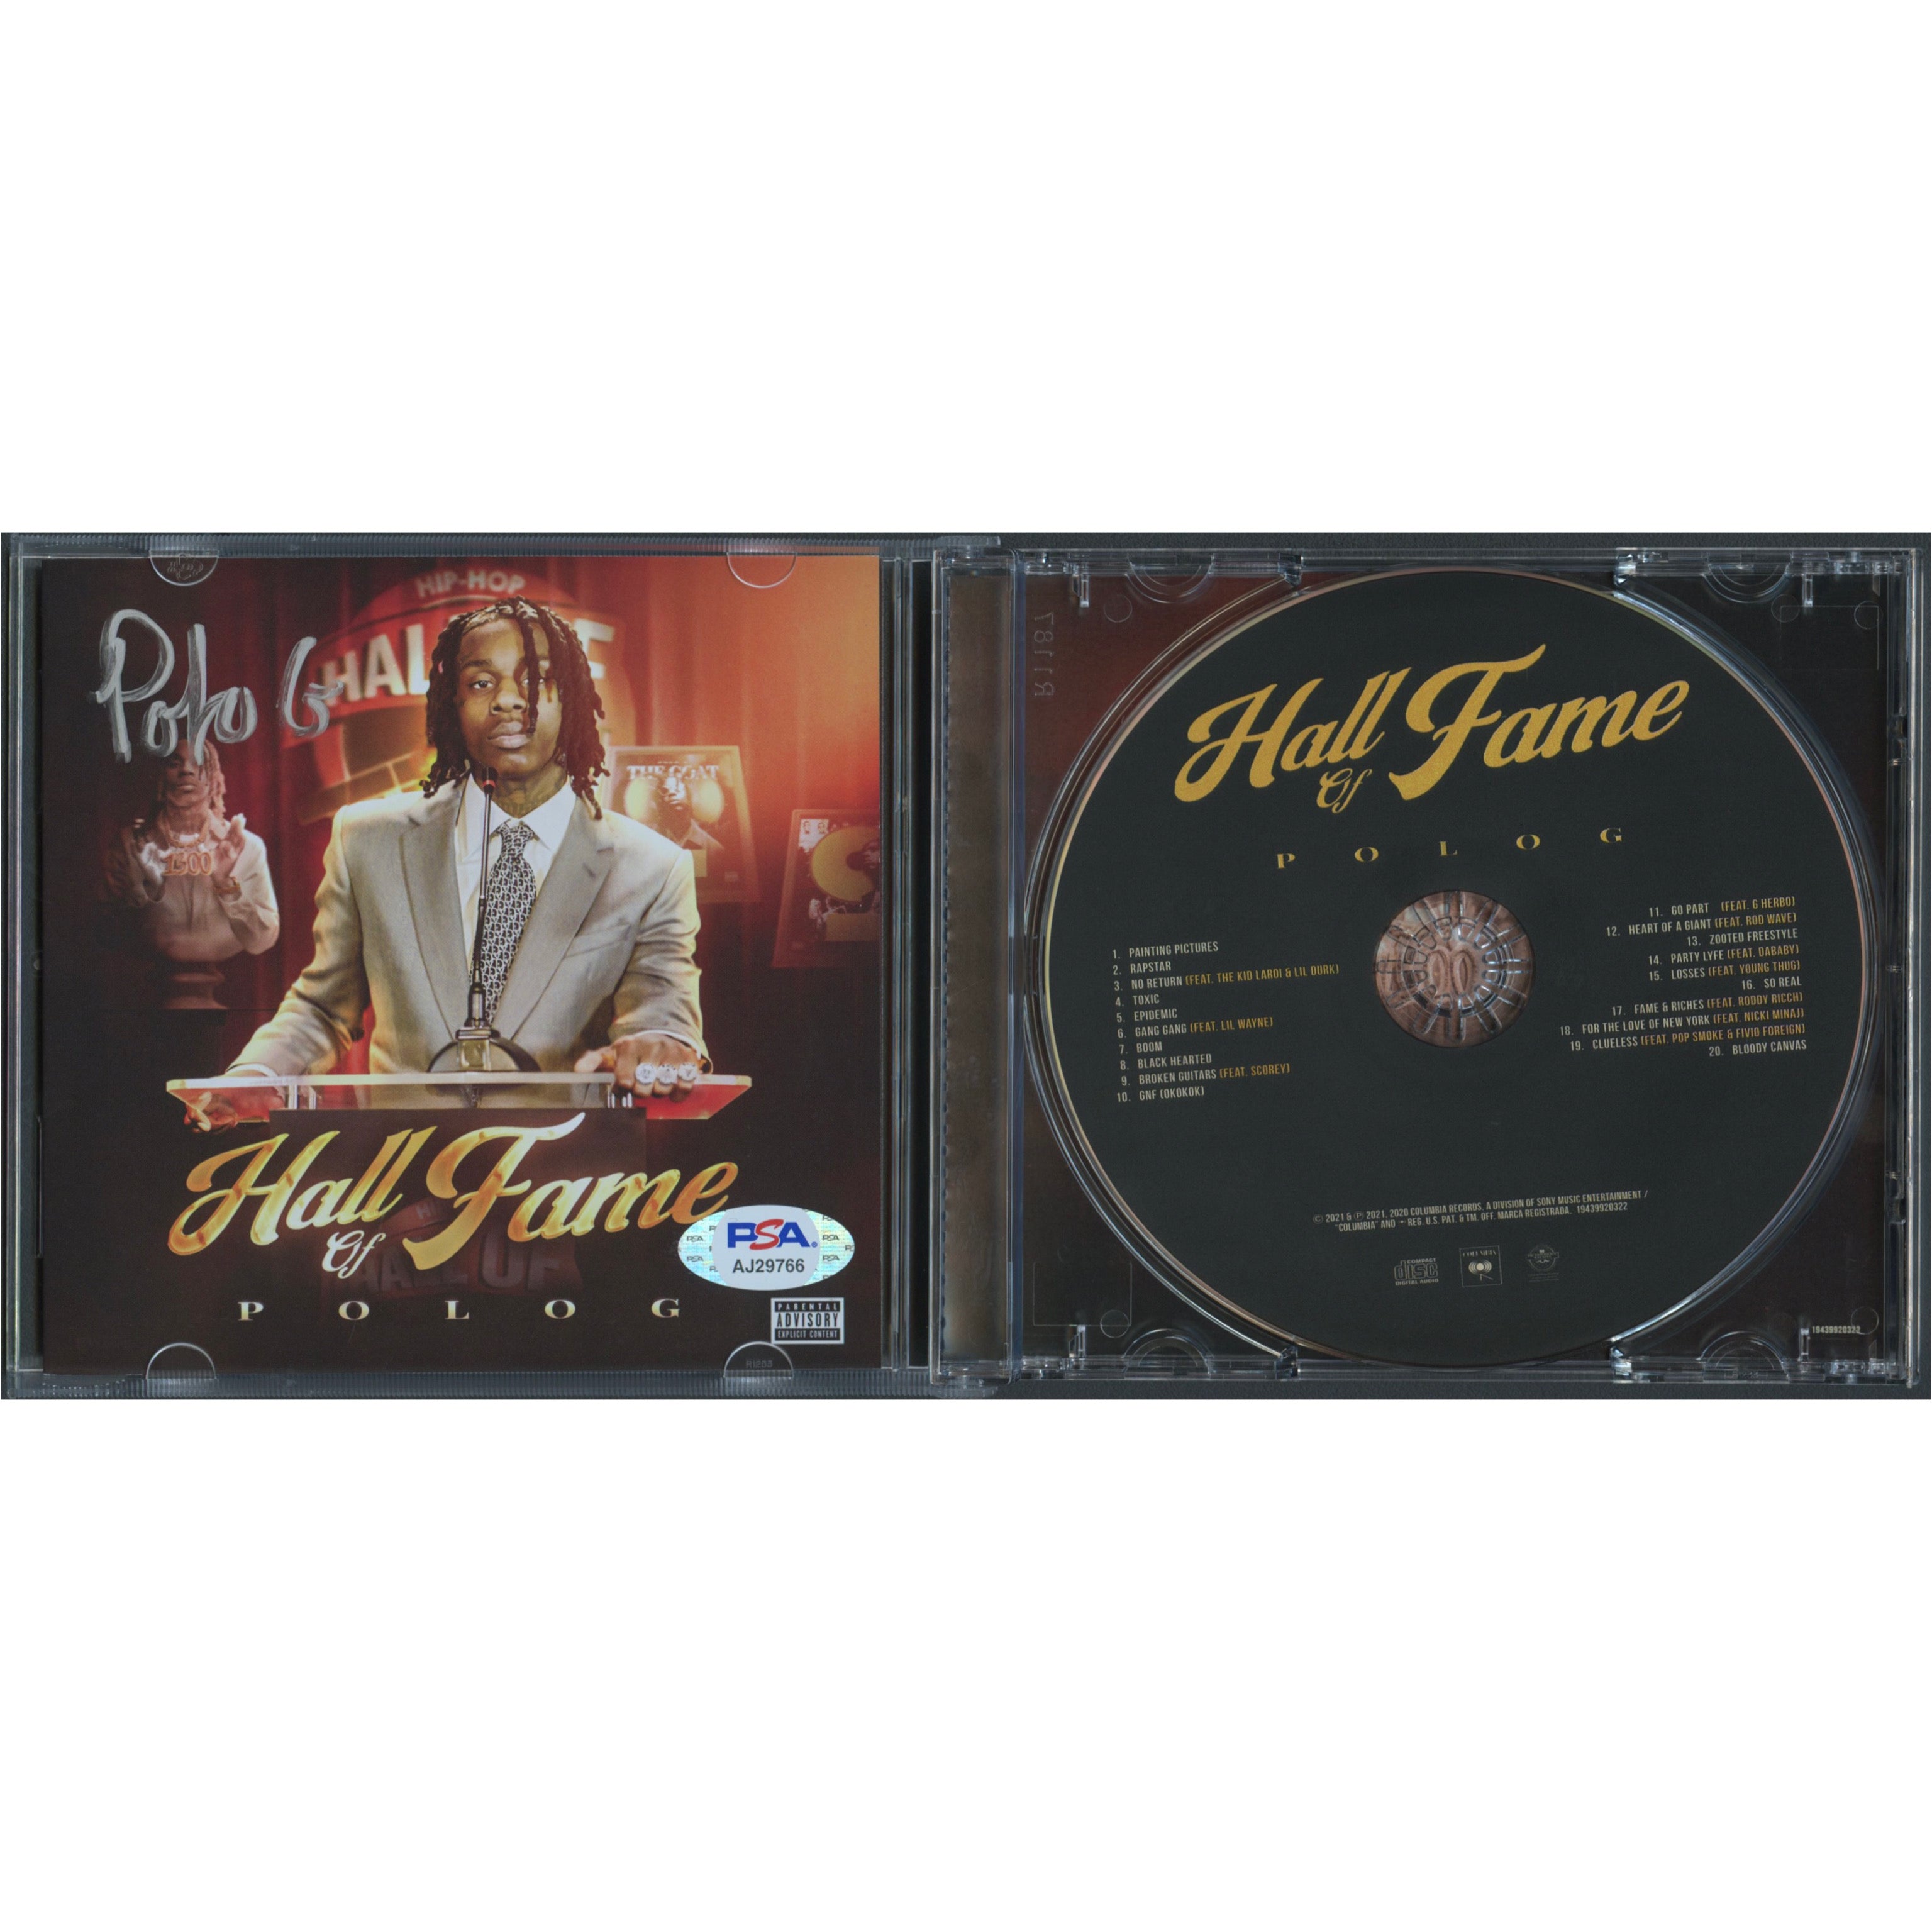 Polo G signed The Goat LP Vinyl JSA Album autographed – Golden State  Memorabilia